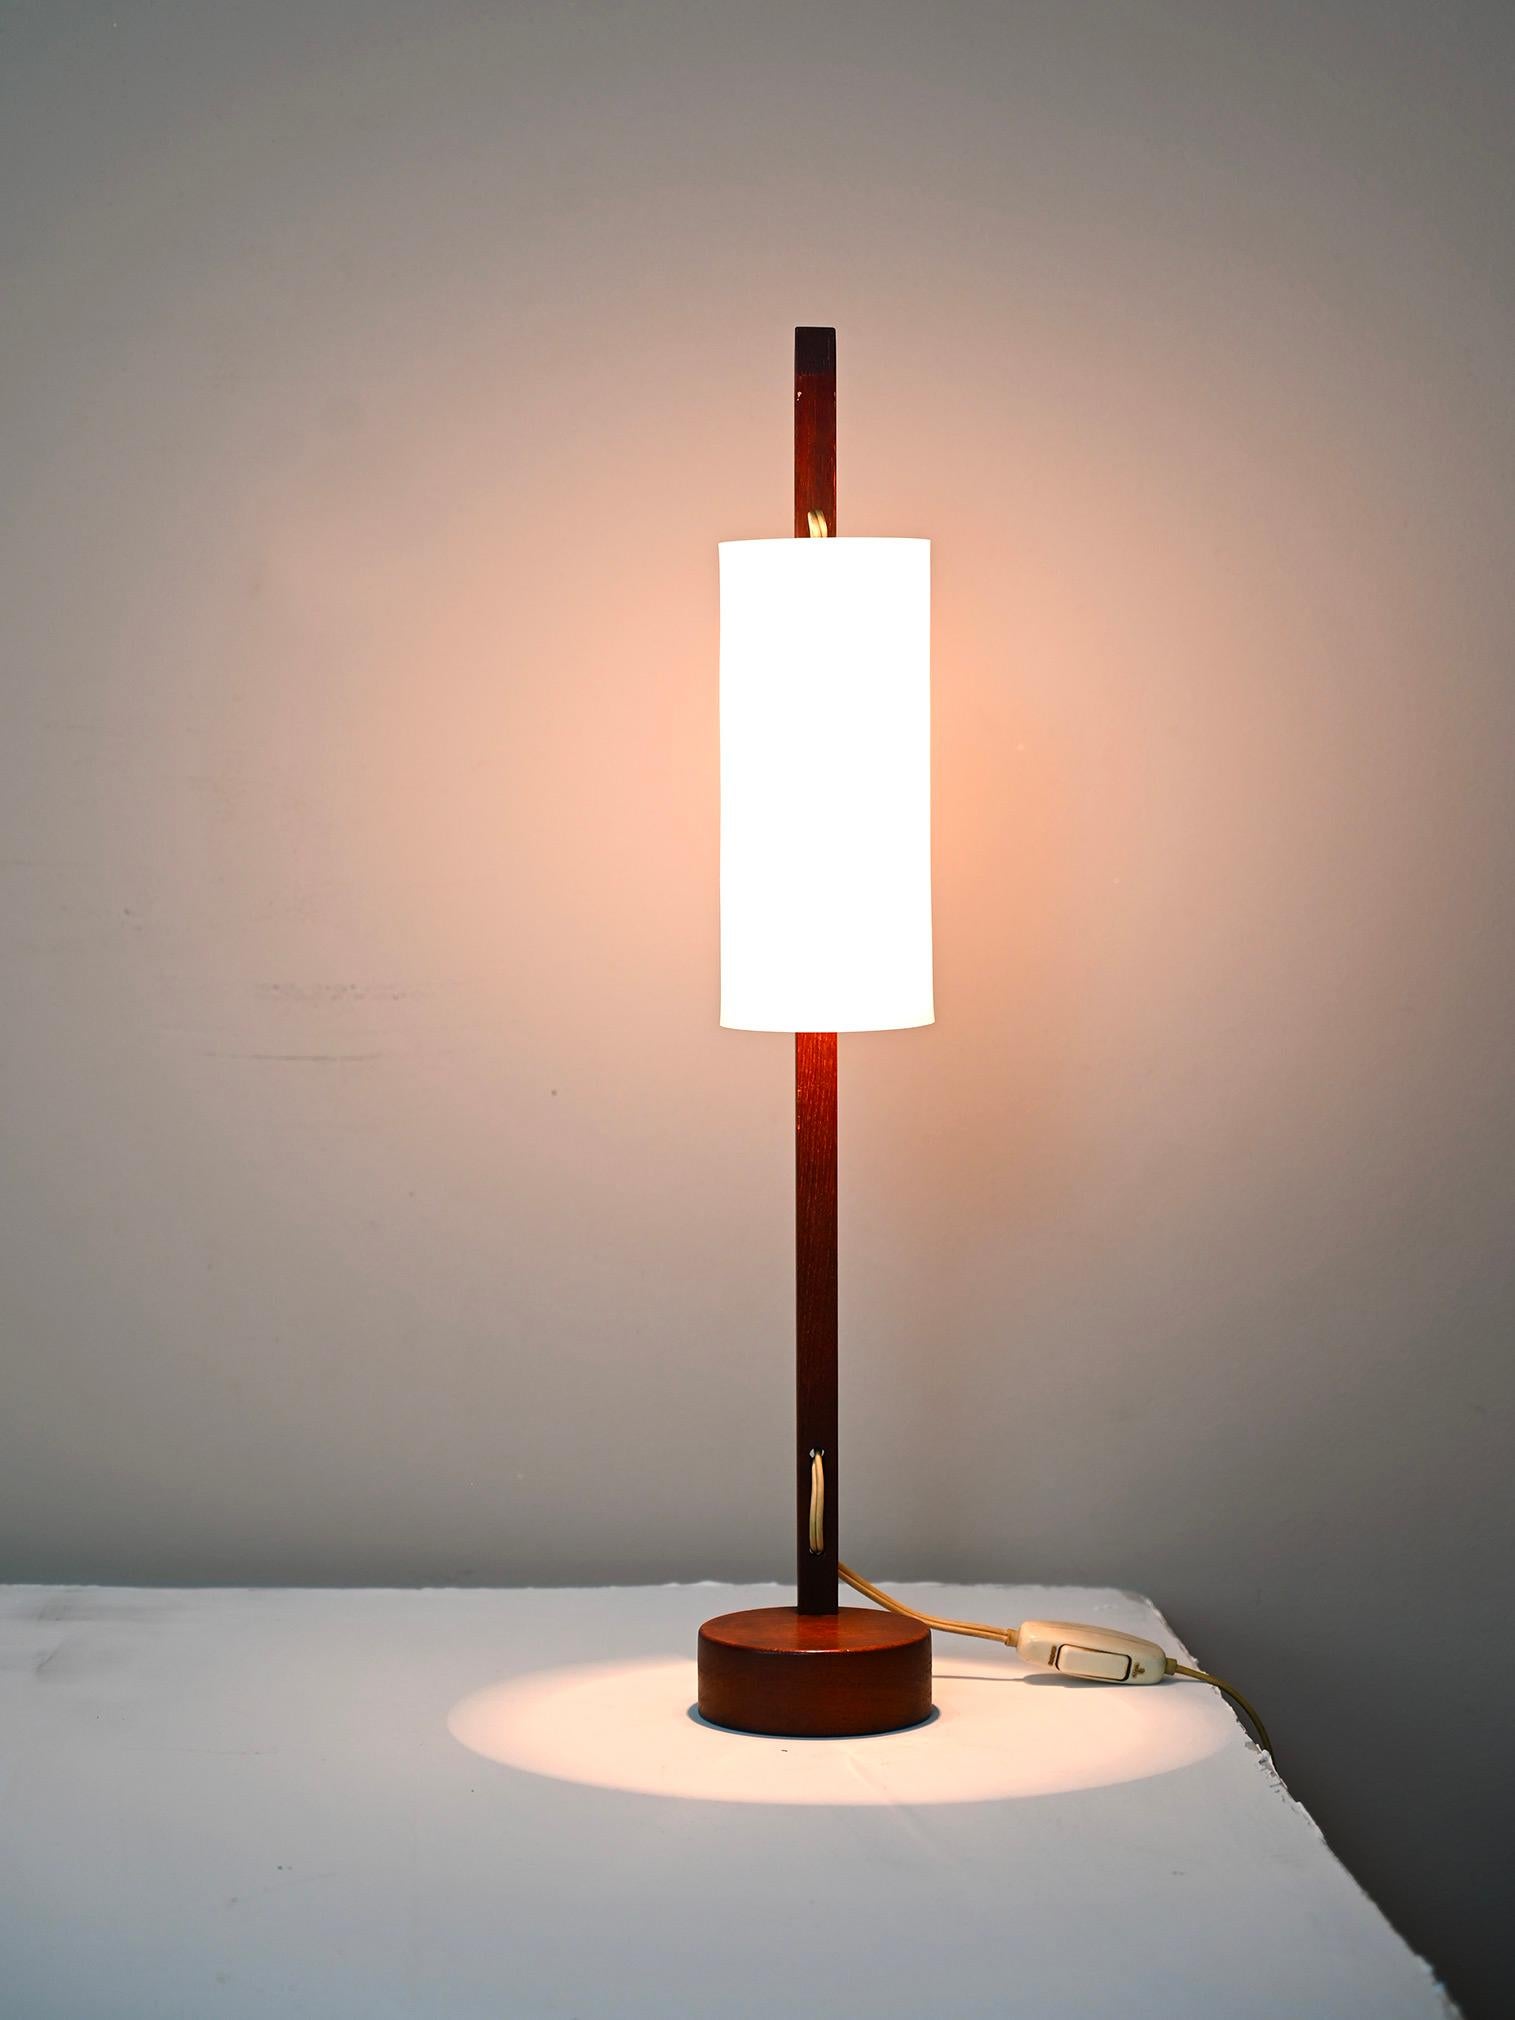 Lampe de table originale de Hans Agnes Jakobsson pour Markaryd.
La lampe est en bois de teck et l'abat-jour en bakélite.
La lampe porte l'autocollant d'originalité et a été produite en Suède entre les années 1950 et 1960.

Très bon état - la lampe